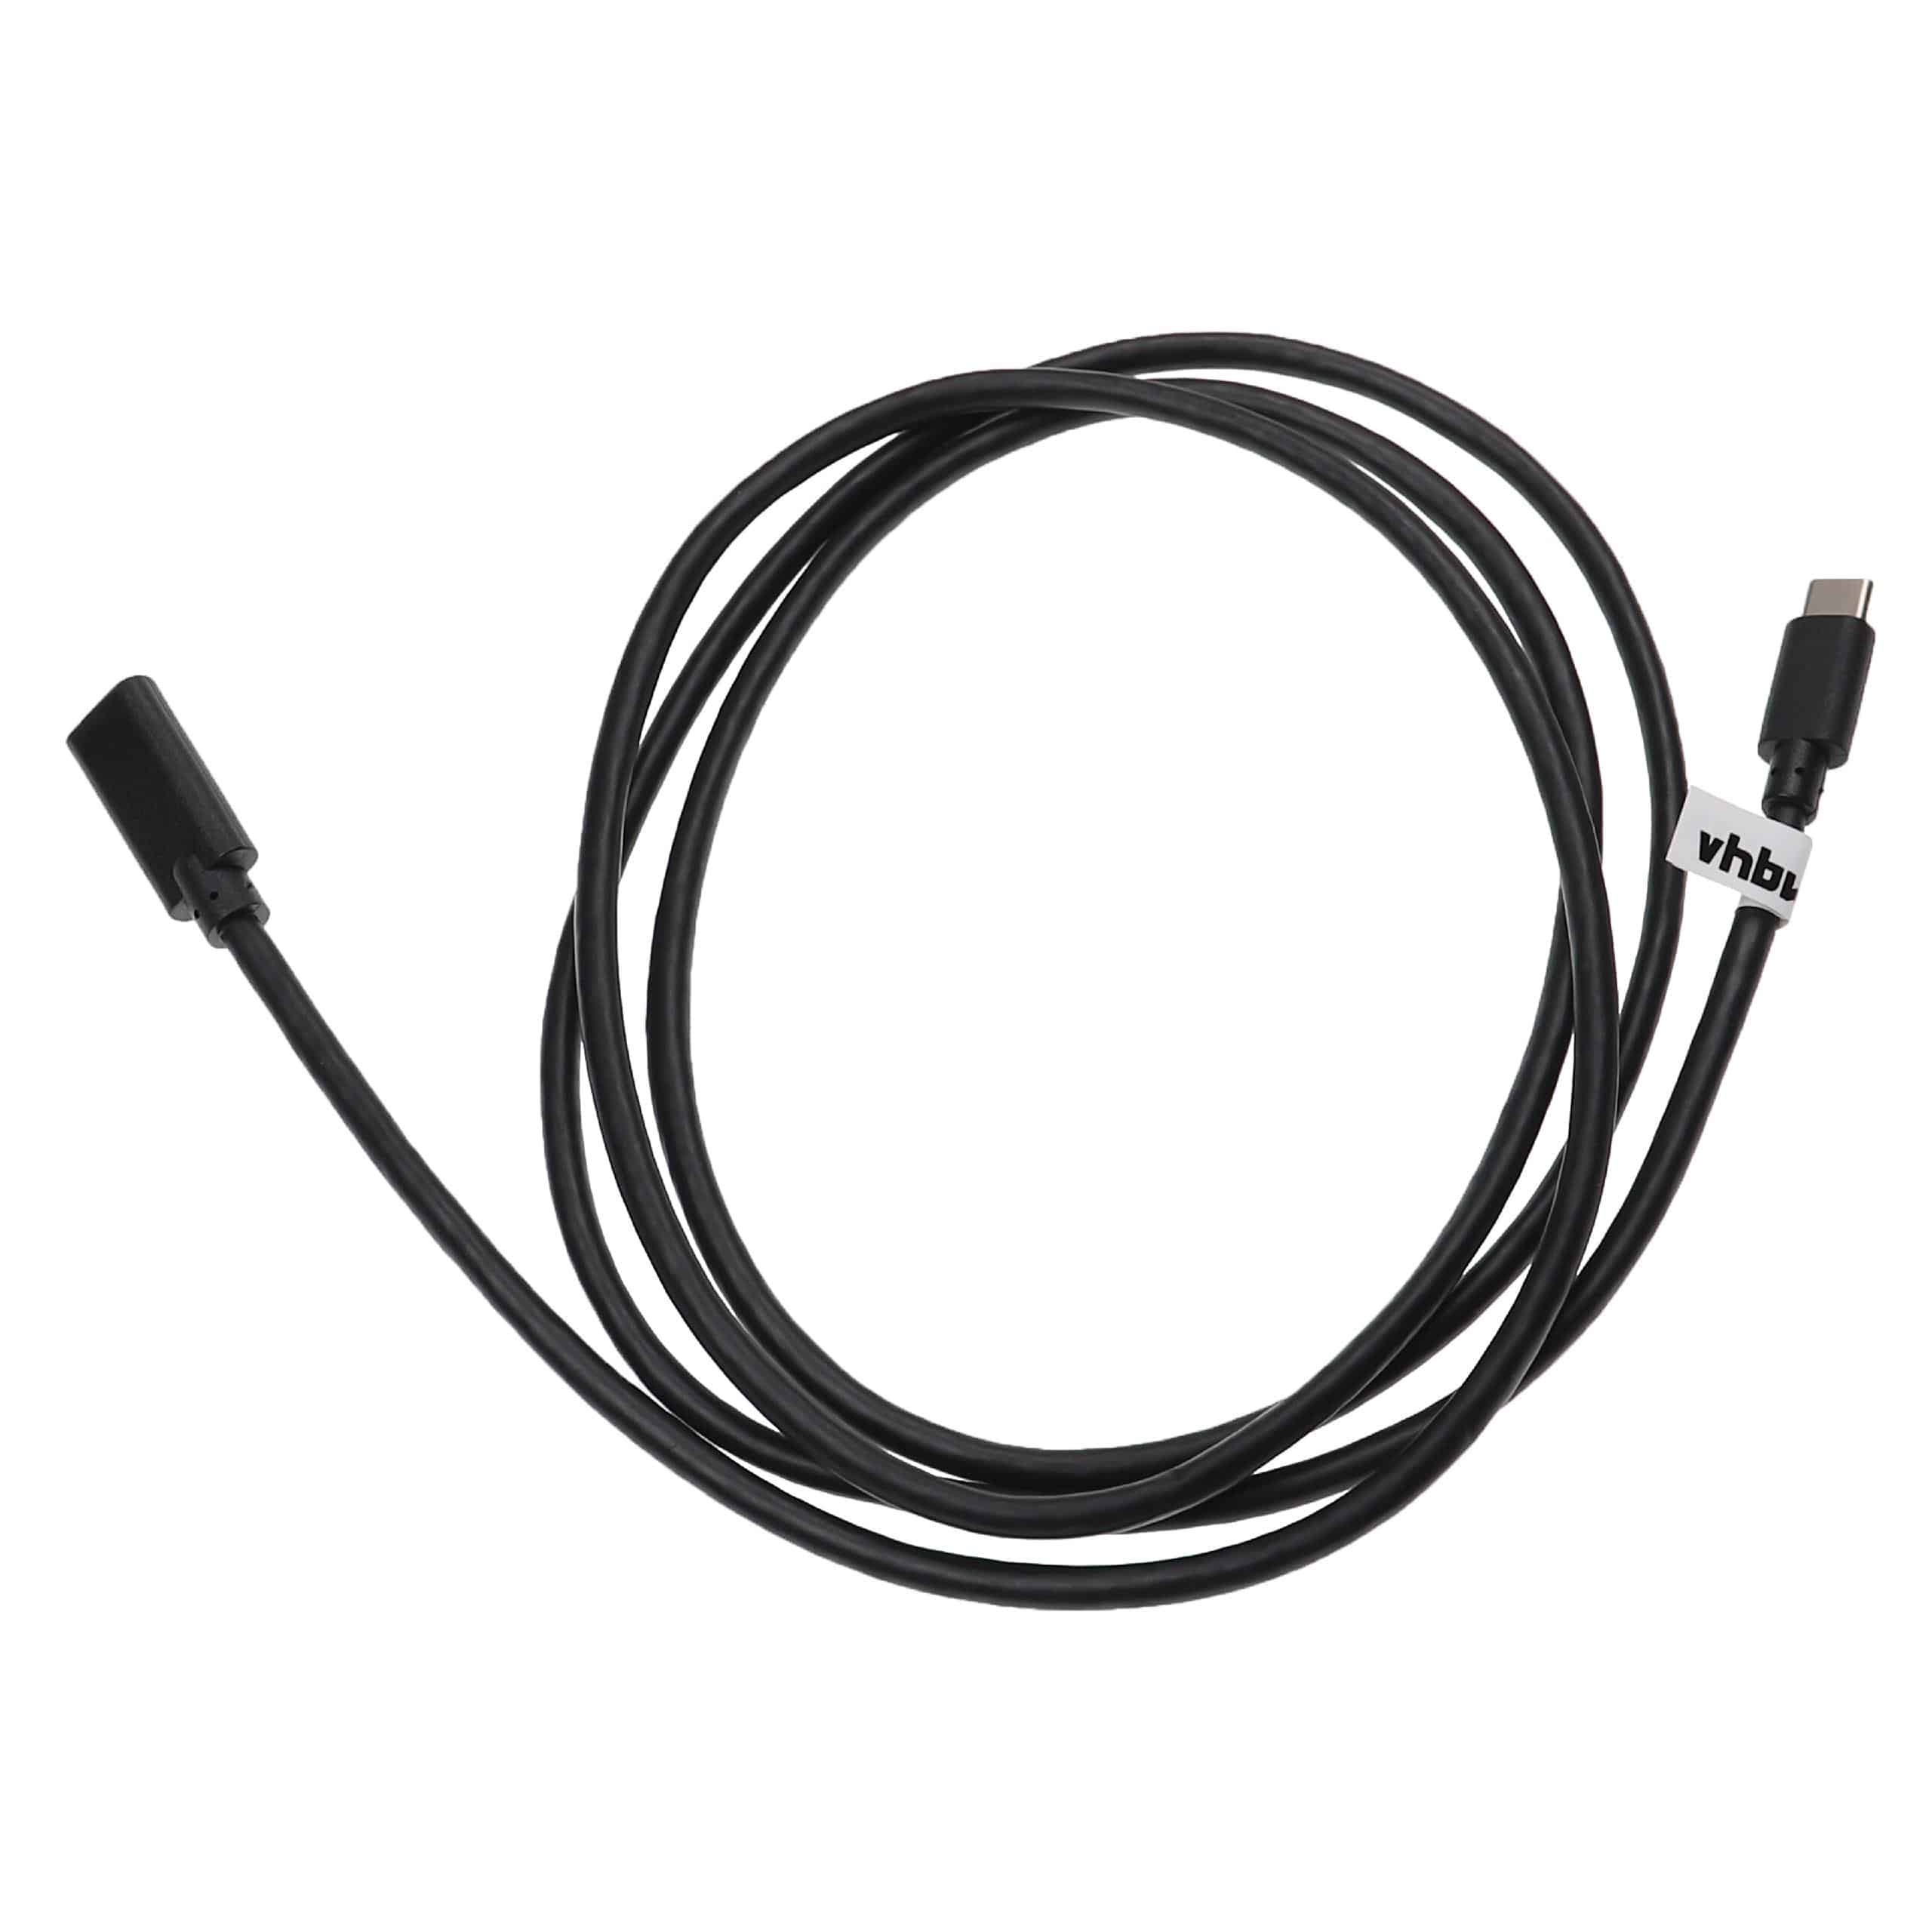 USB-C Verlängerungskabel für diverse Notebooks, Smartphones, Tablets, PCs - 1,5 m Schwarz, USB 3.1 C Kabel